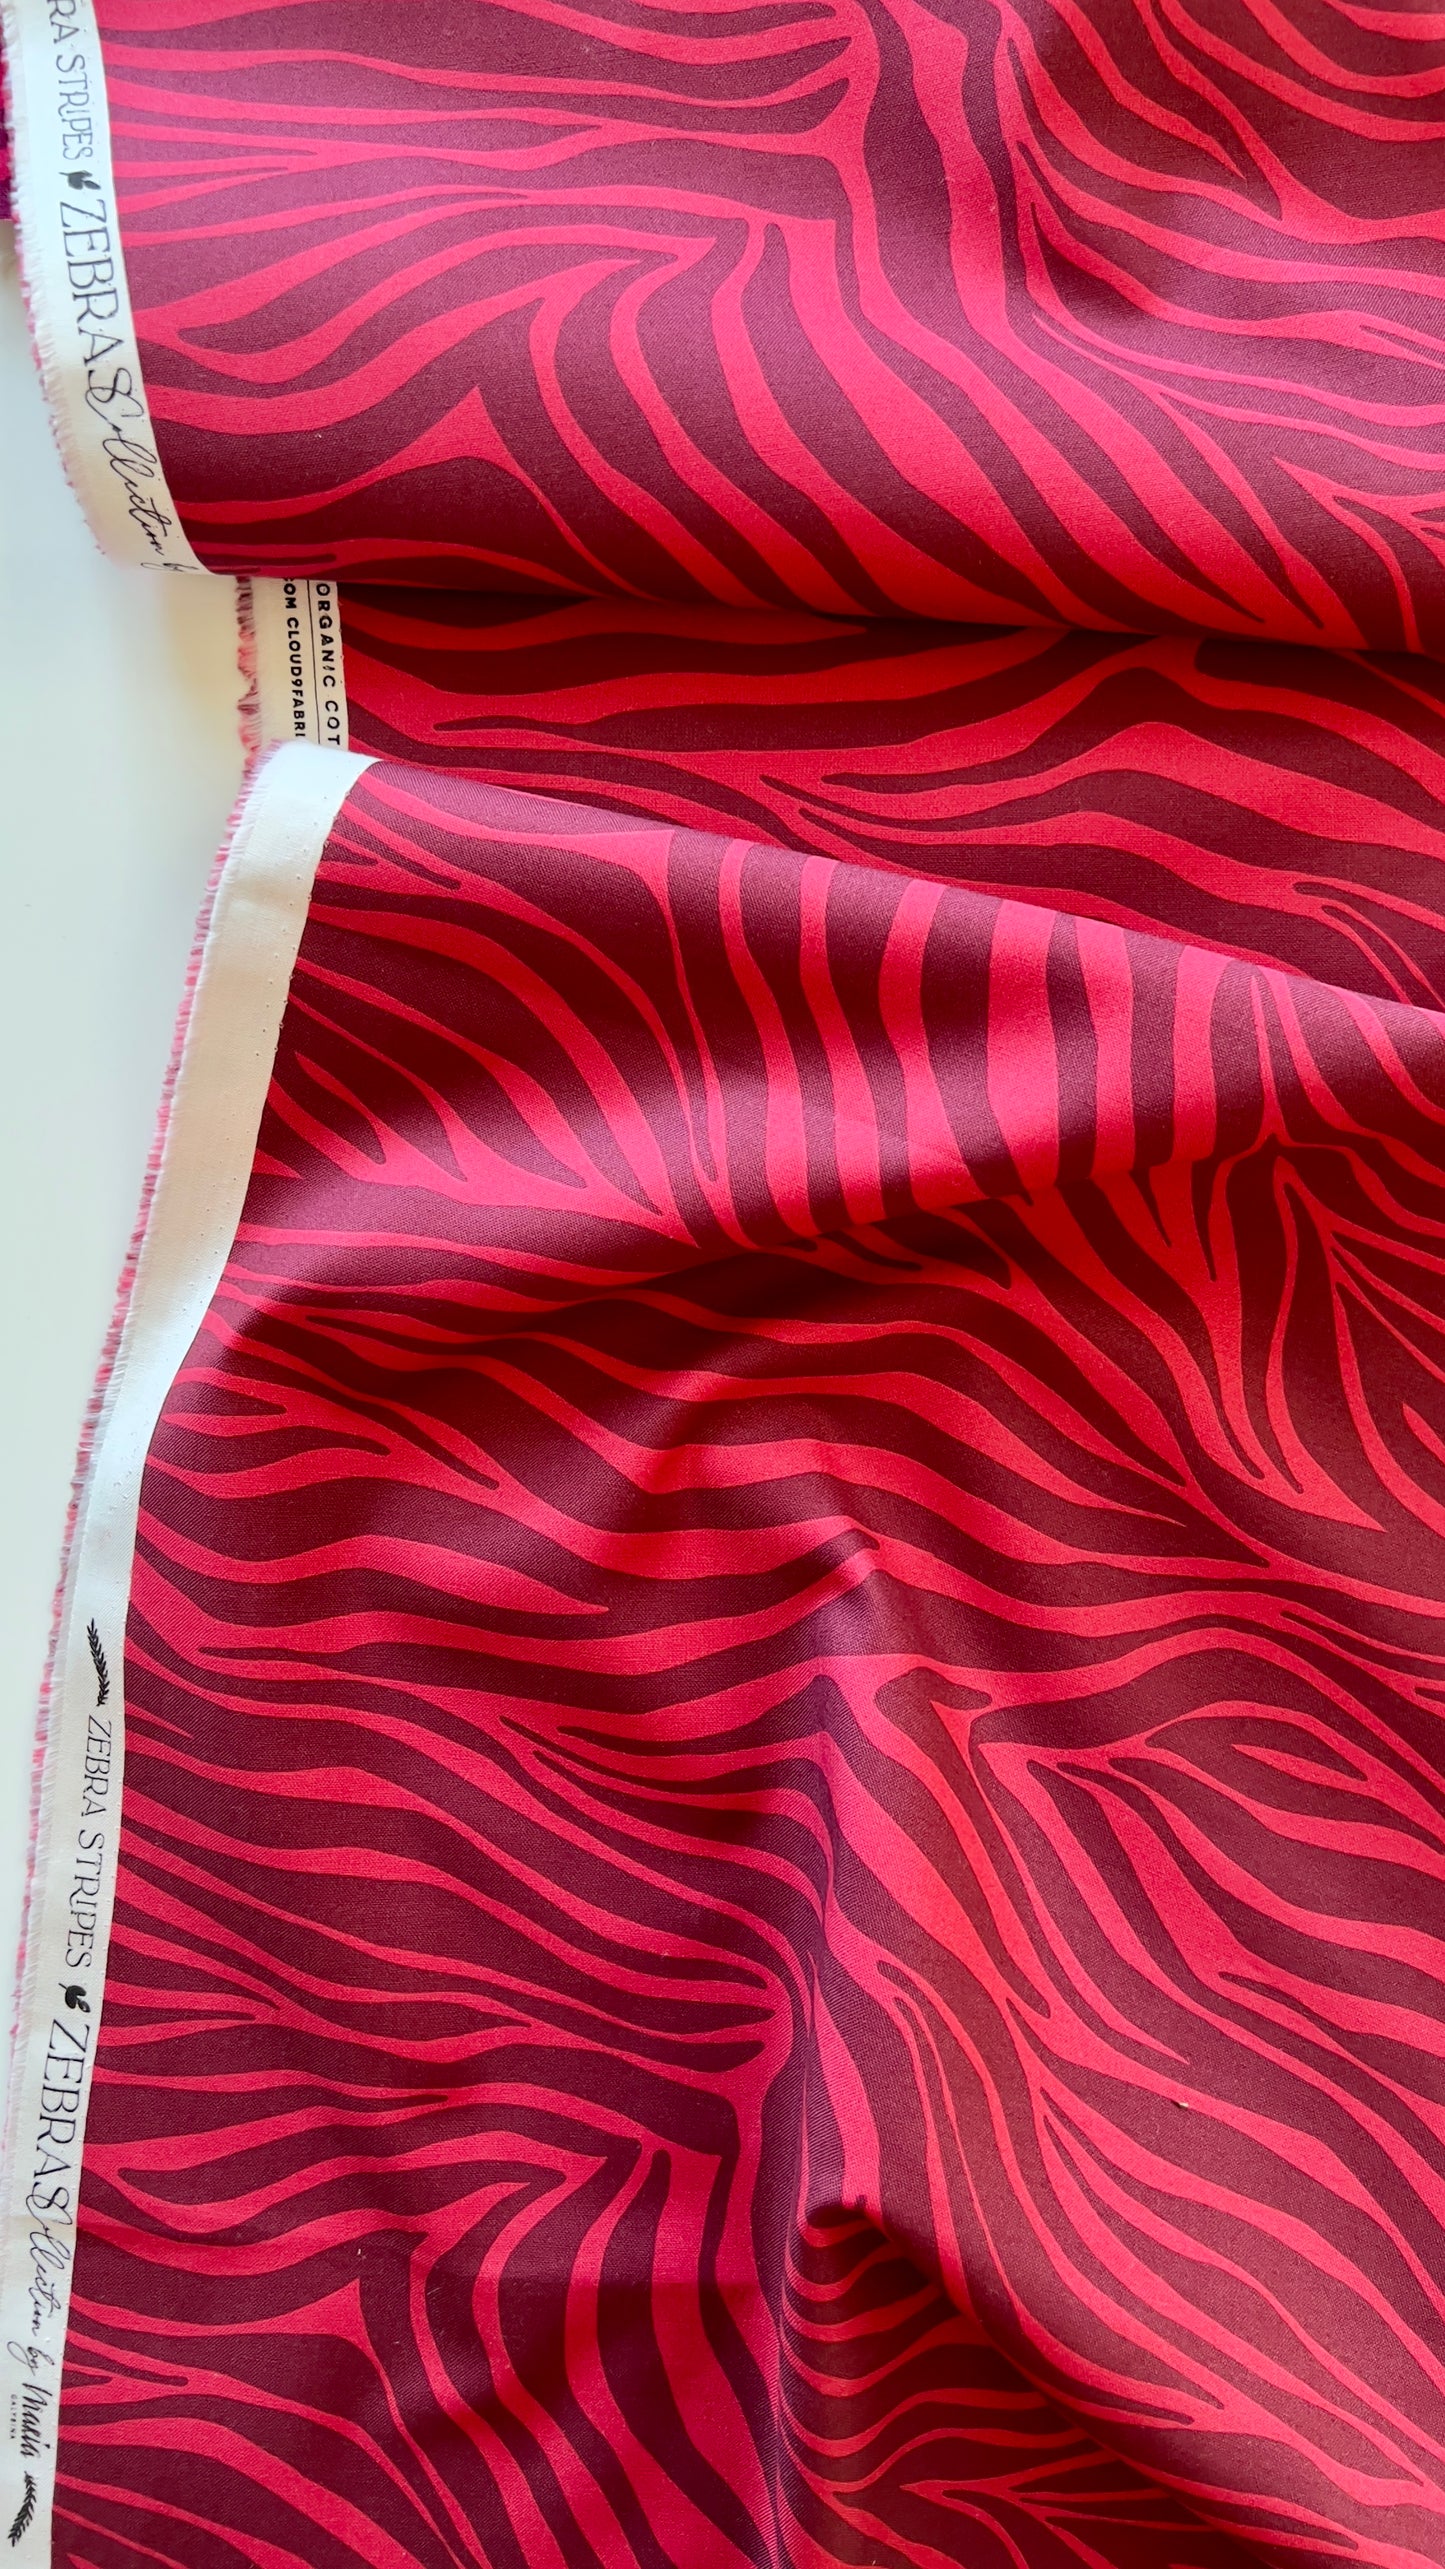 Zebras - Zebra Stripes in Red